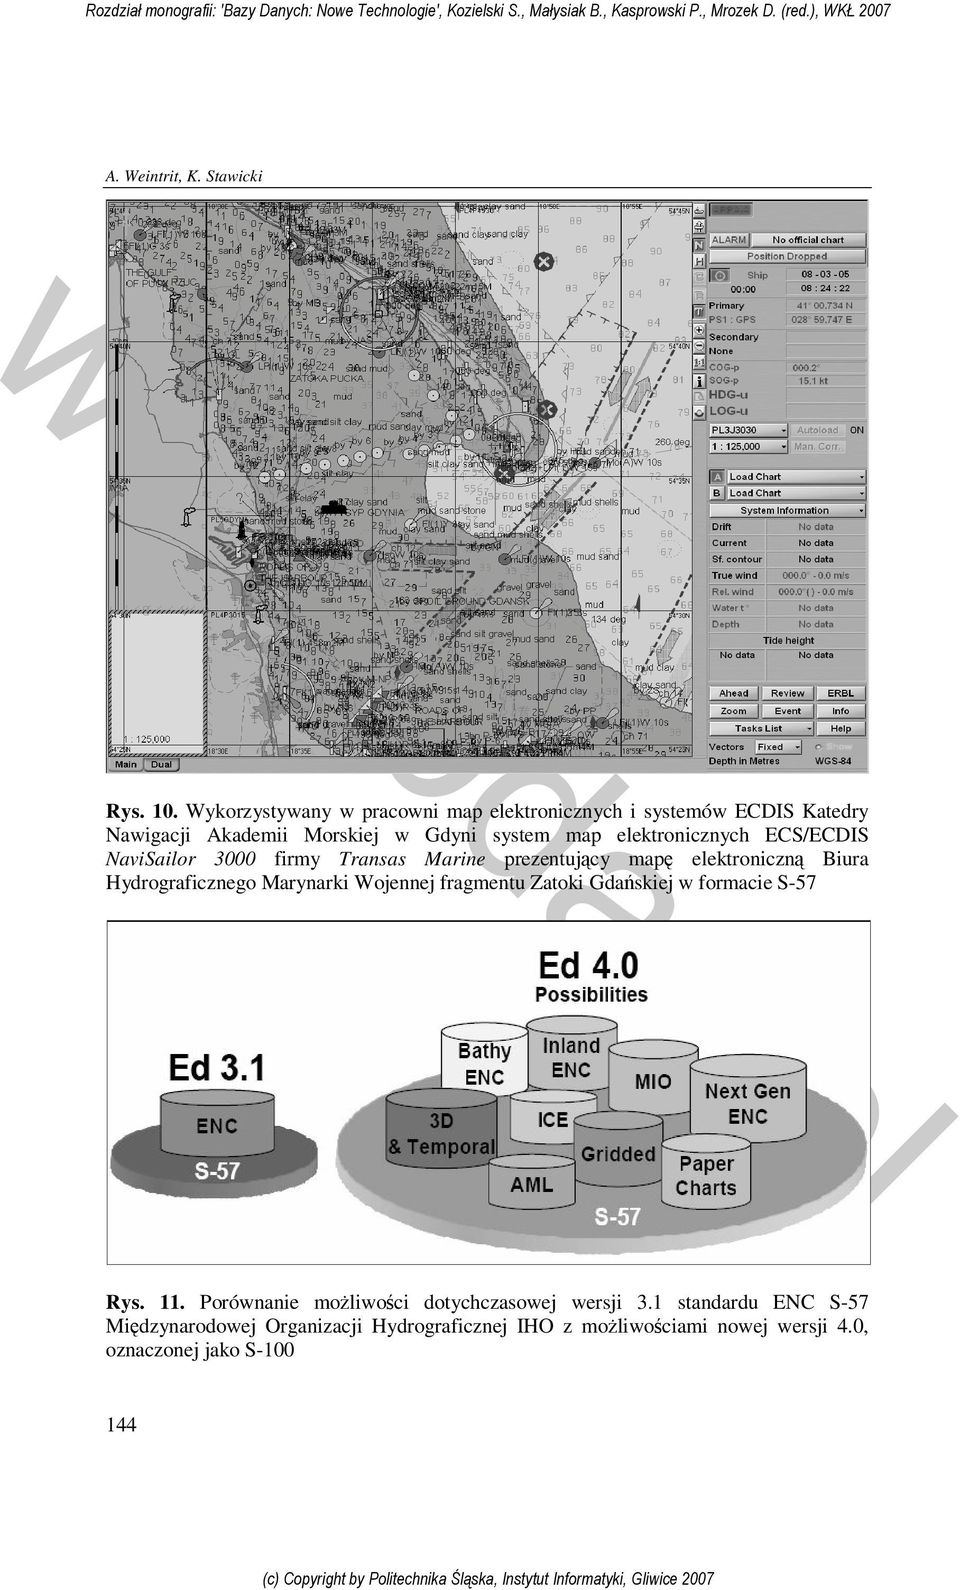 elektronicznych ECS/ECDIS NaviSailor 3000 firmy Transas Marine prezentujący mapę elektroniczną Biura Hydrograficznego Marynarki